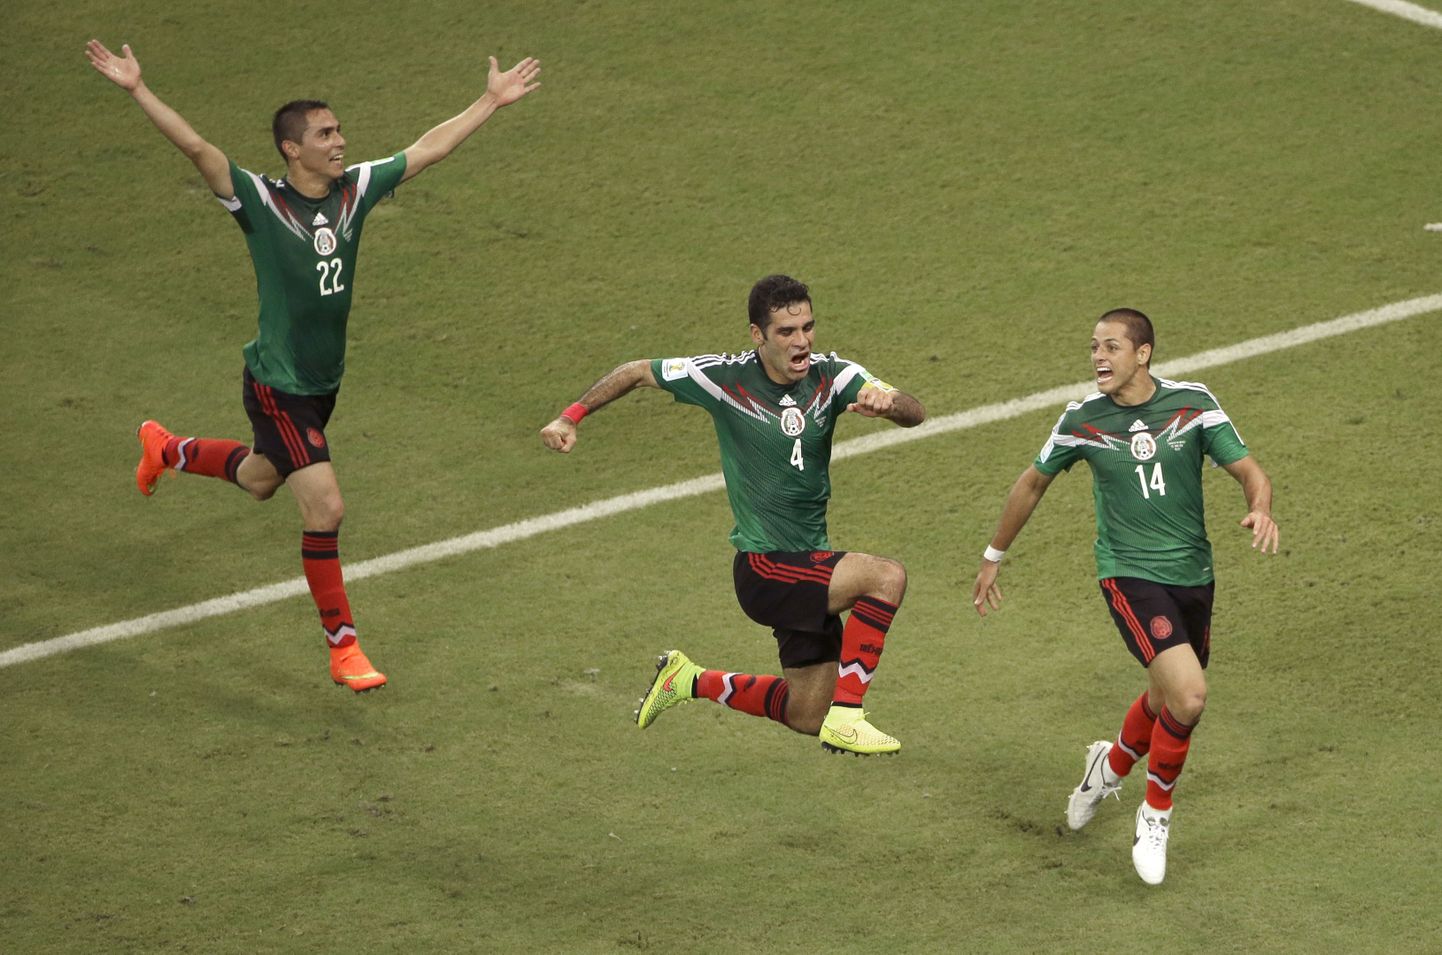 Väravalööja Rafael Marquez (keskel) tähistab koos meeskonnakaaslastega Mehhiko võitu.